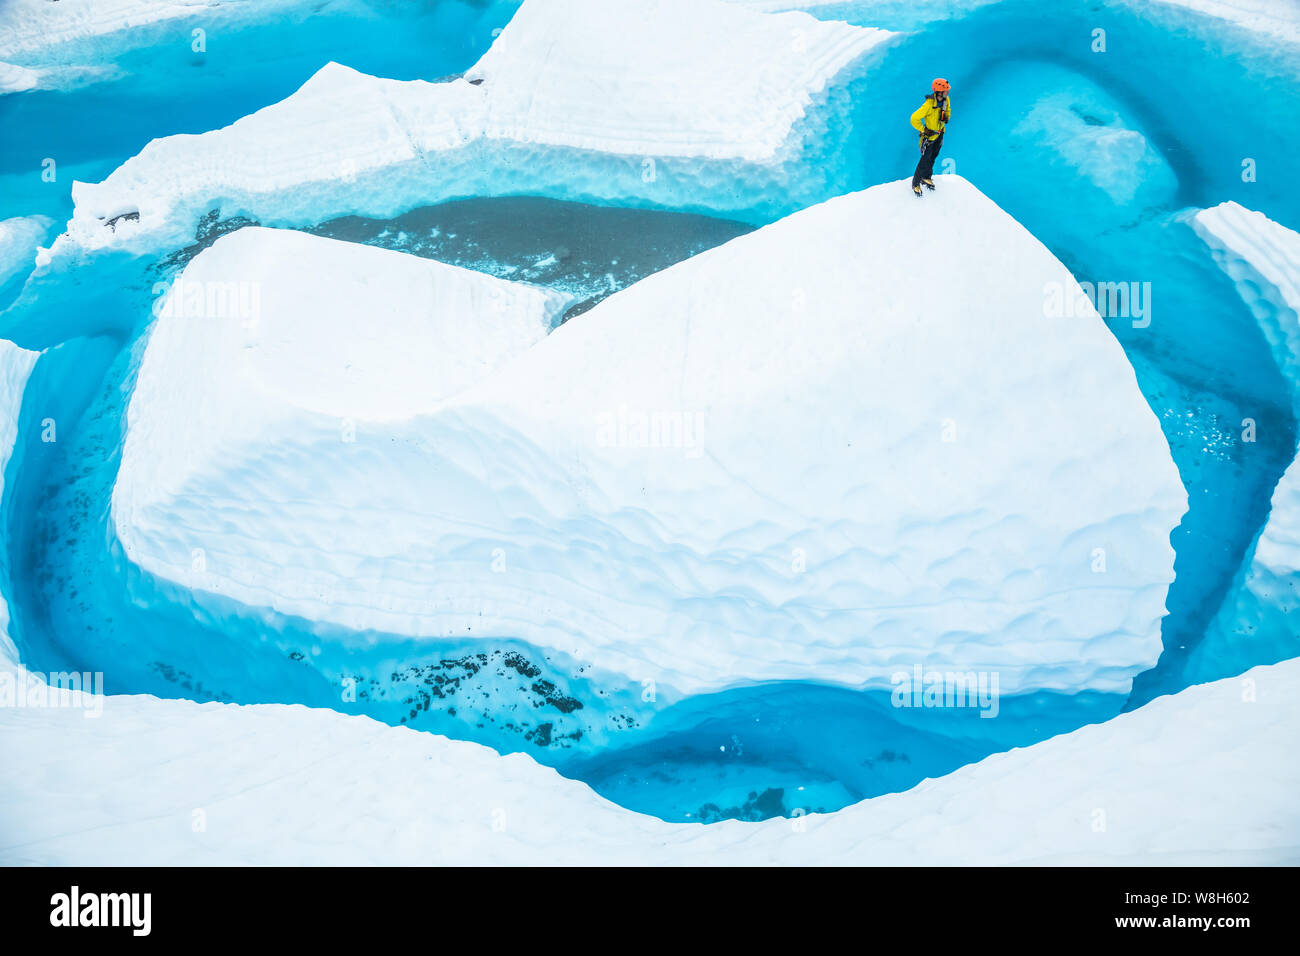 Nach dem Reiten in ein Kanu, ein junger Mann steht auf einem serac oder fin von Eis, das aus einem massiven blauen Pool. Der Supraglazialen See sitzt oben Stockfoto